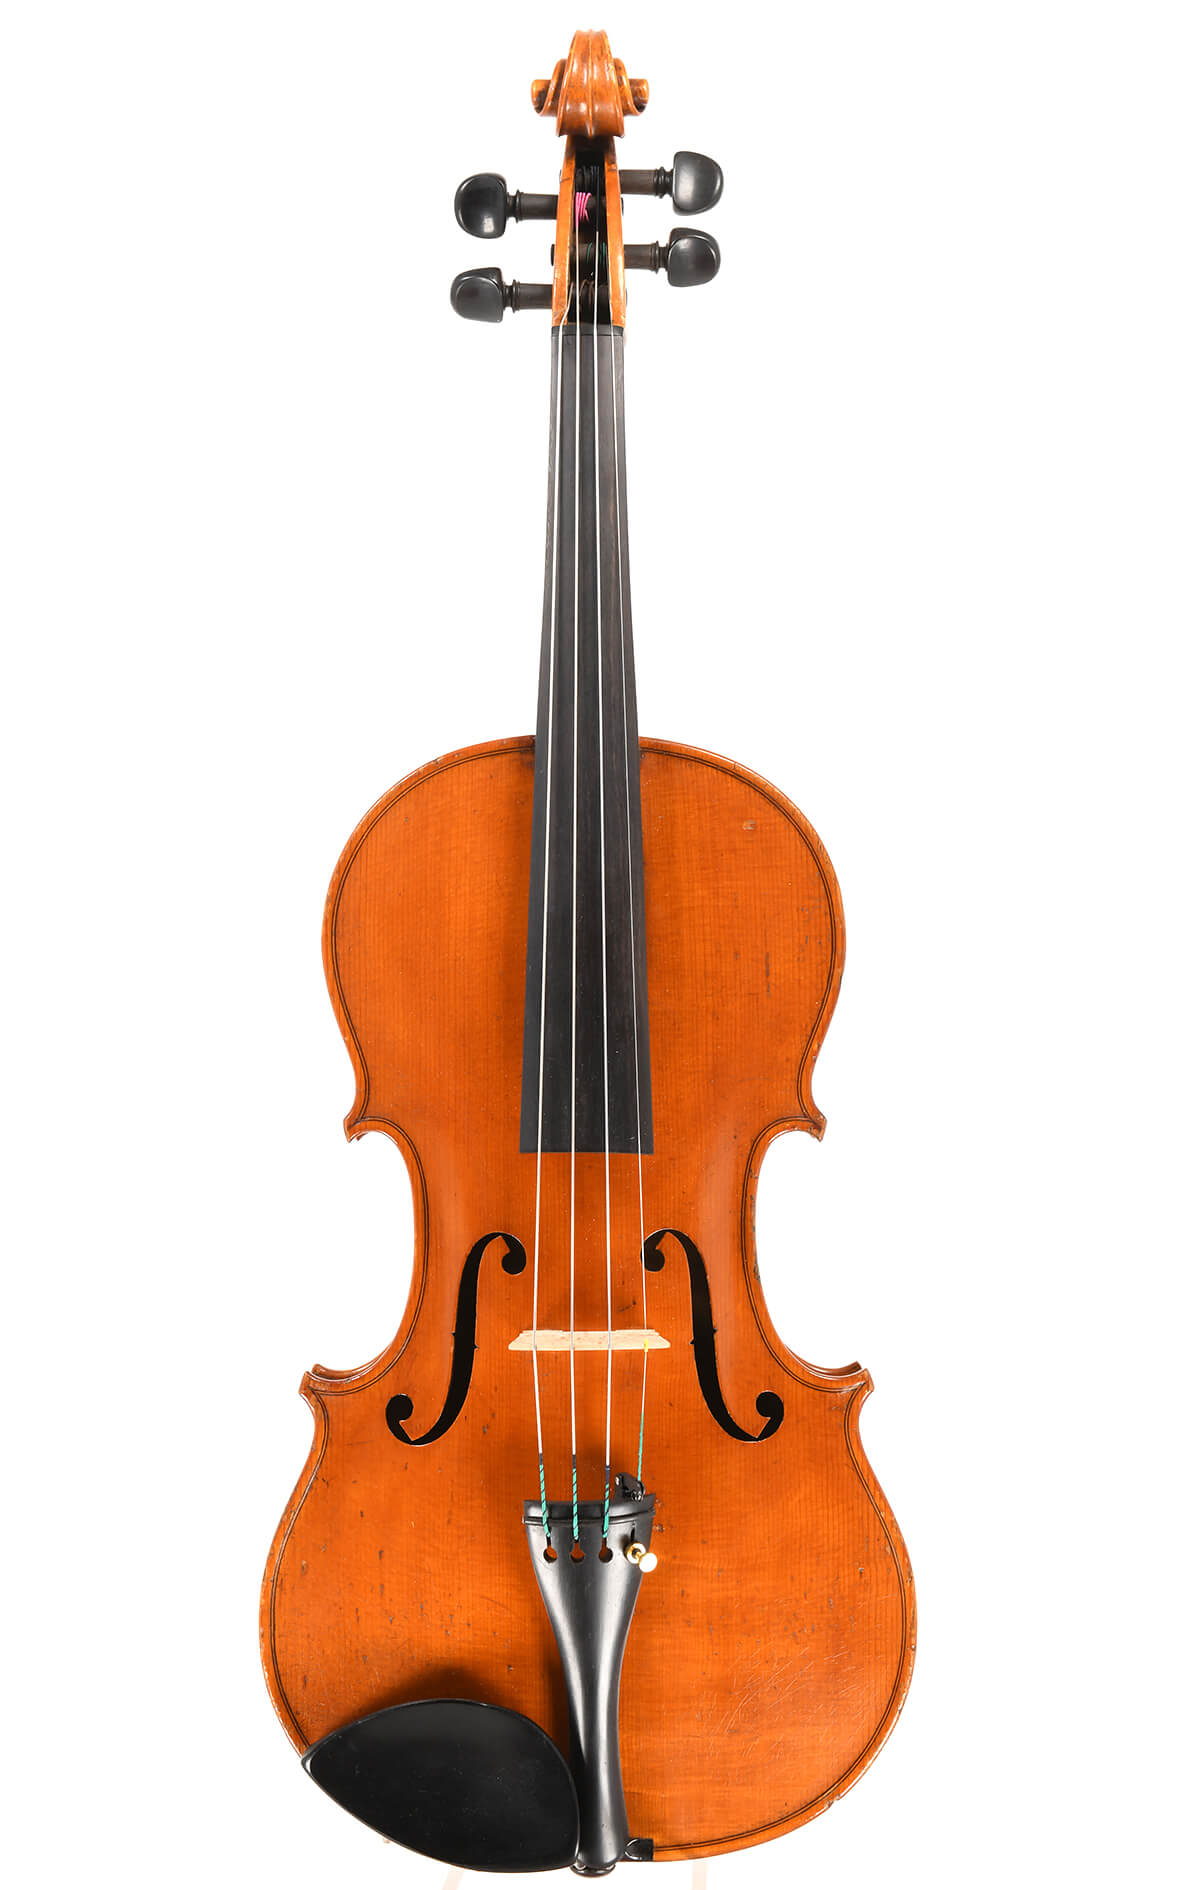 J. J. Gilbert – Violine von 1886: Mit seinem Op. 47 gibt Jeffery James Gilbert nach 13 Jahren Geigenbau-Studien eine Probe seines herausragenden Könnens